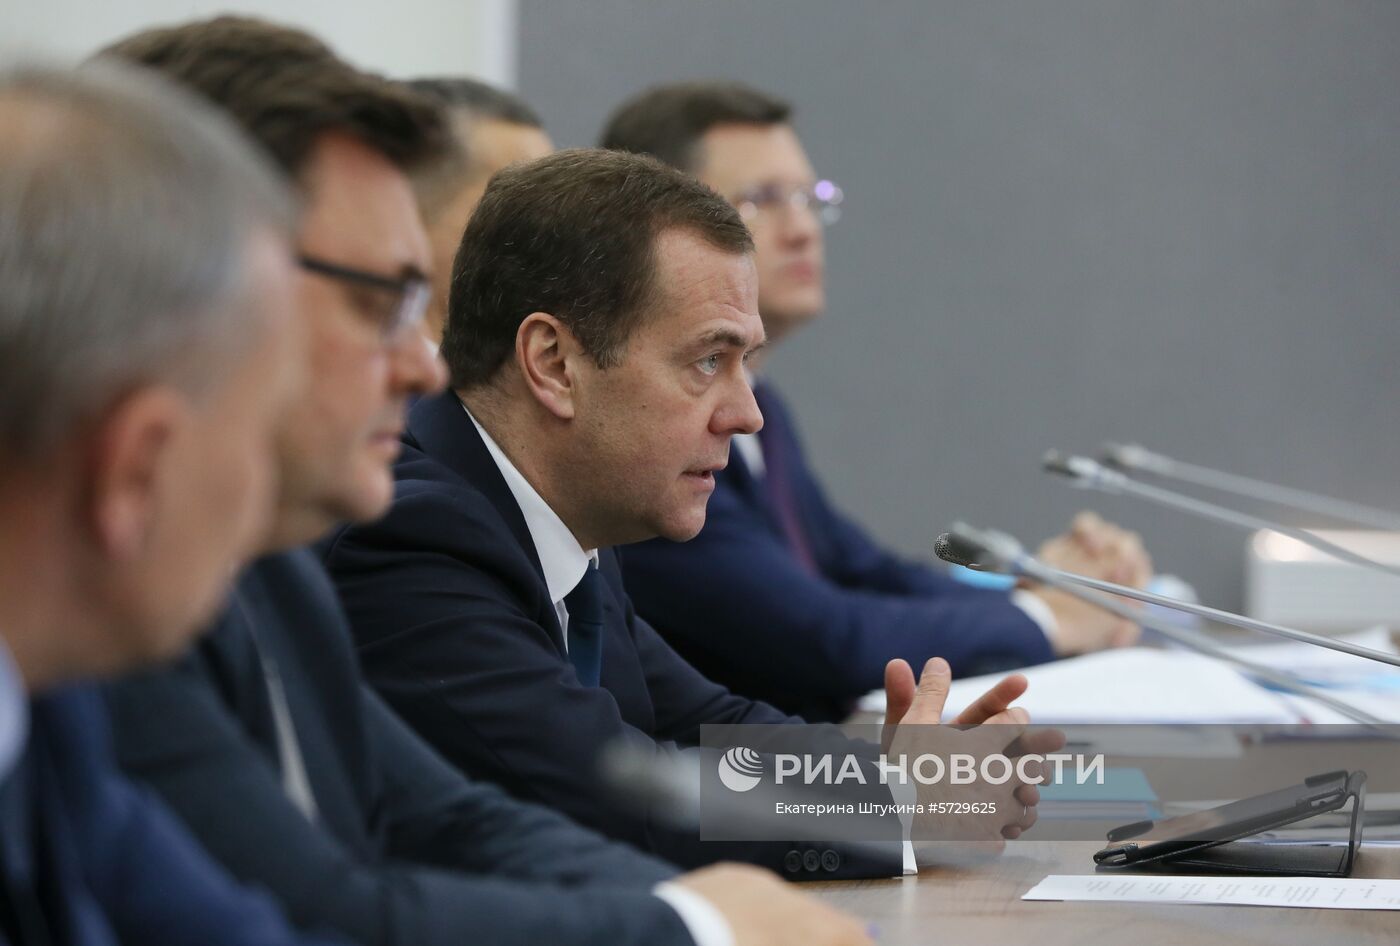 Рабочая поездка премьер-министра РФ Д. Медведева в Ямало-Ненецкий автономный округ